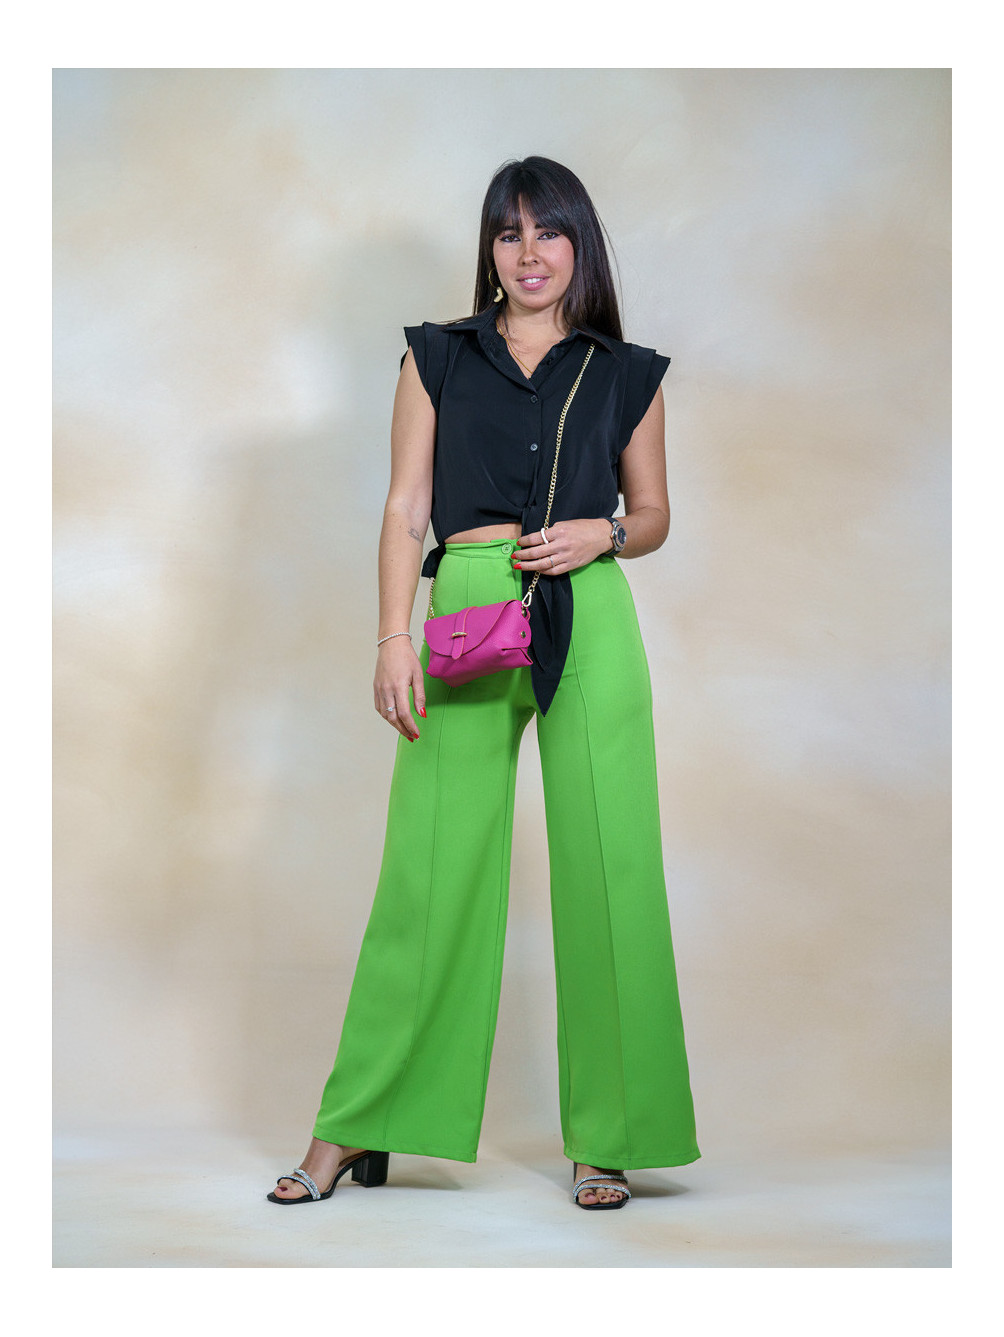 Pantalón Recto Clásico, Pantalón Verde Mujer, Pantalón Clásico Verde, Pantalón Barato, Mariquita Trasquilá